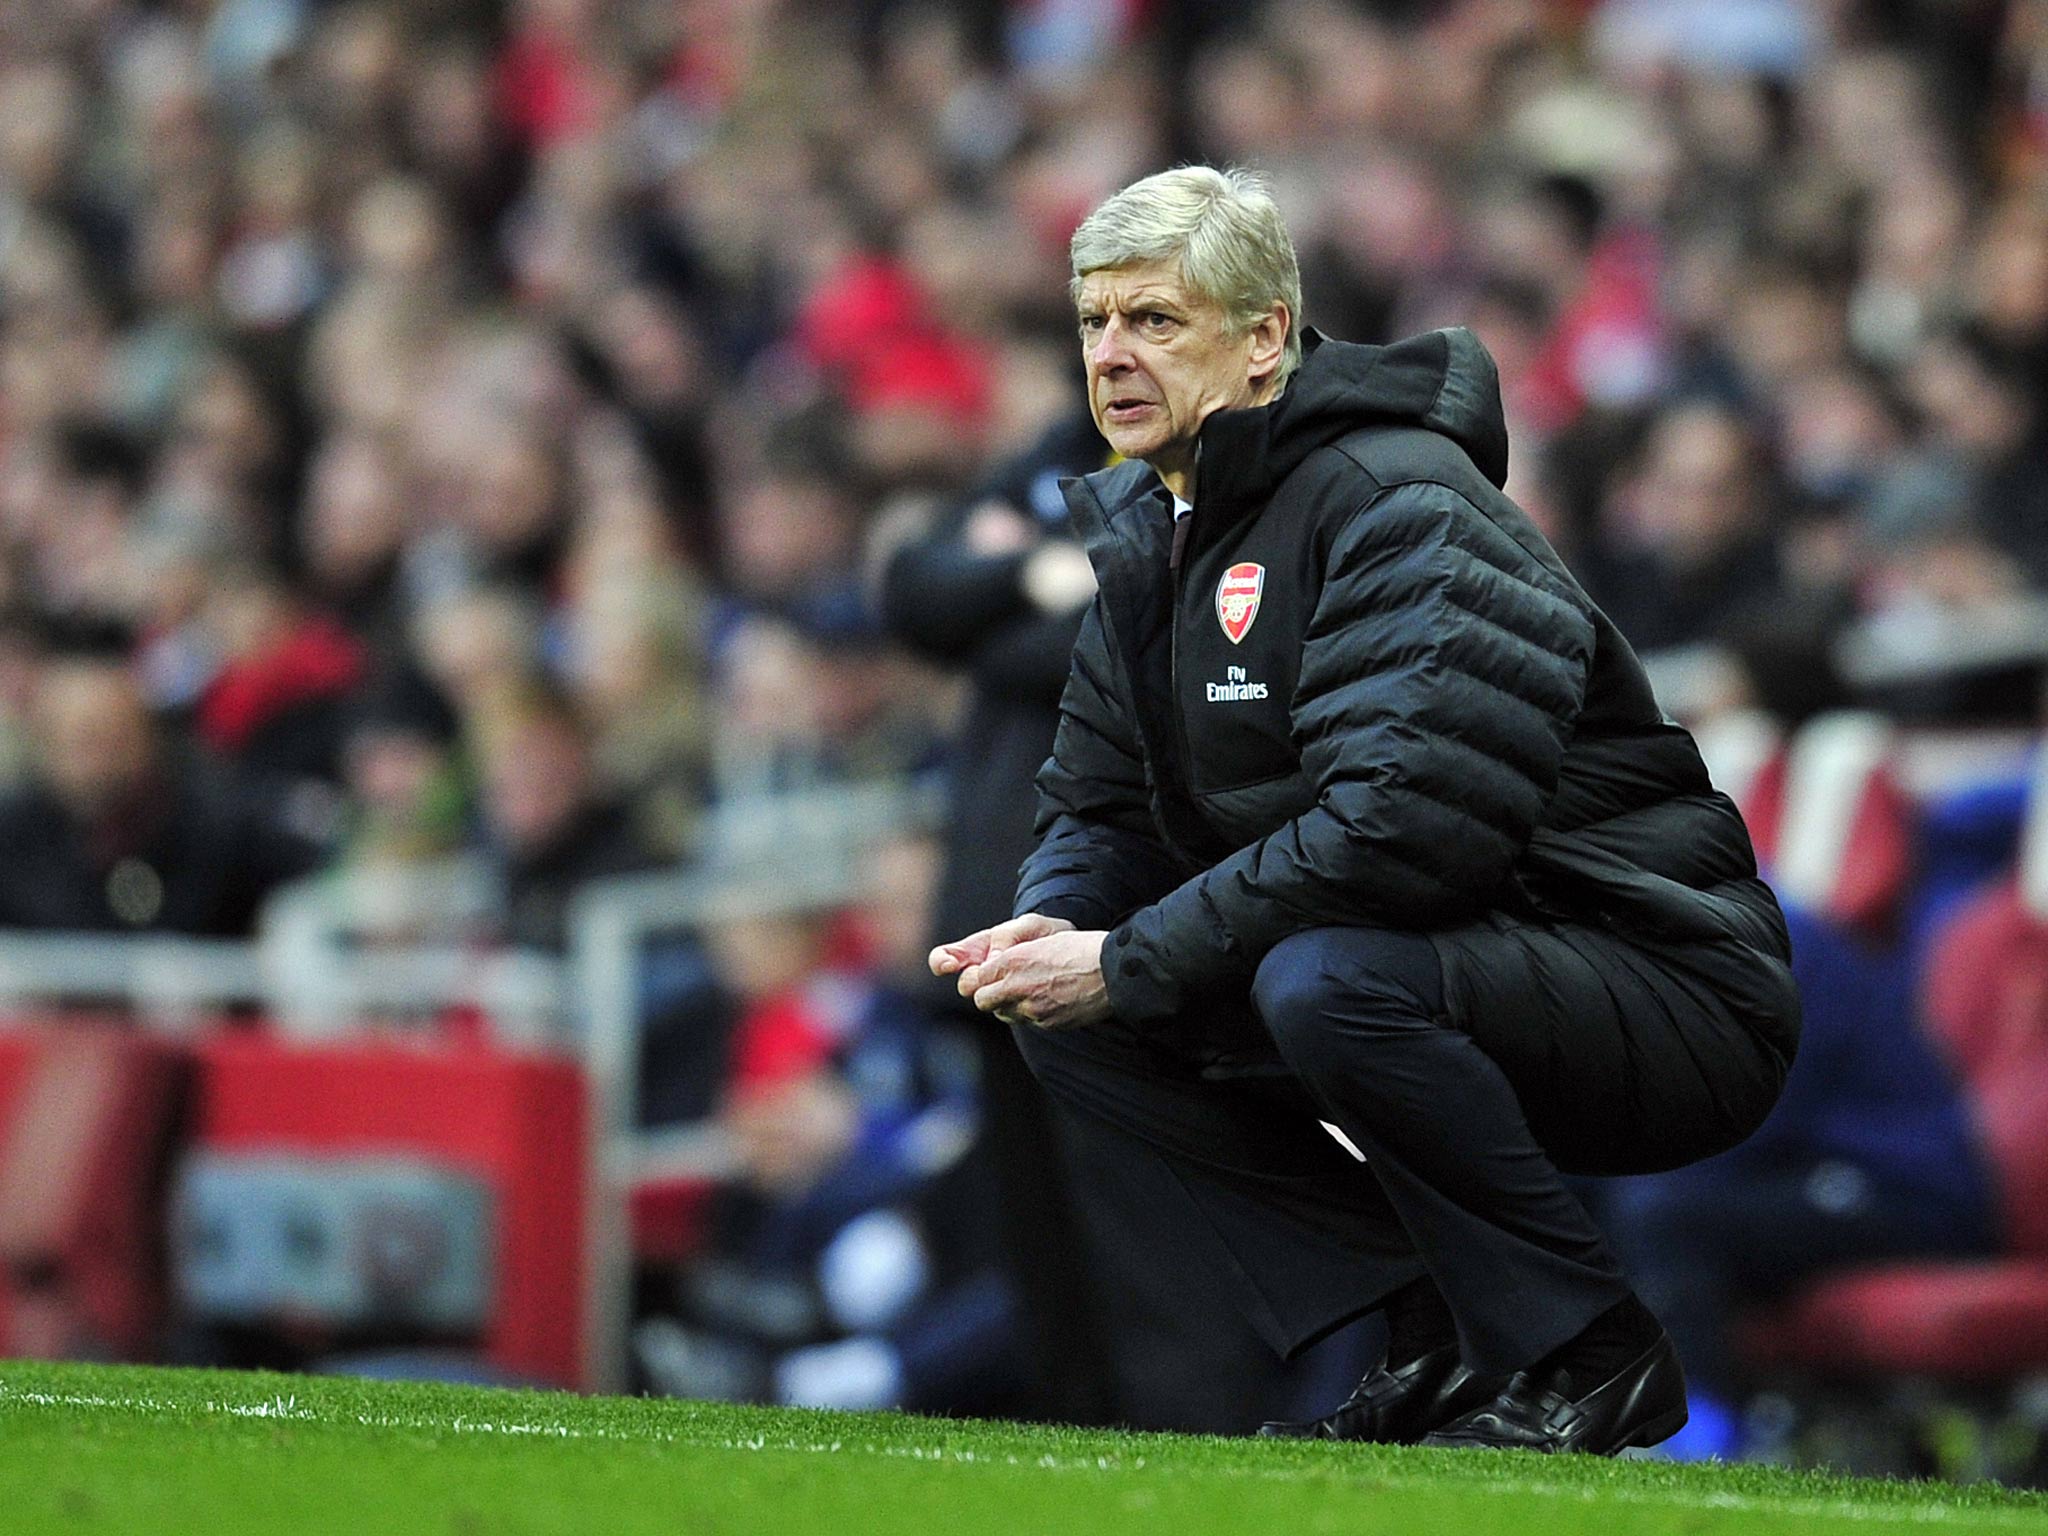 Arsenal manager Arsene Wenger looks on